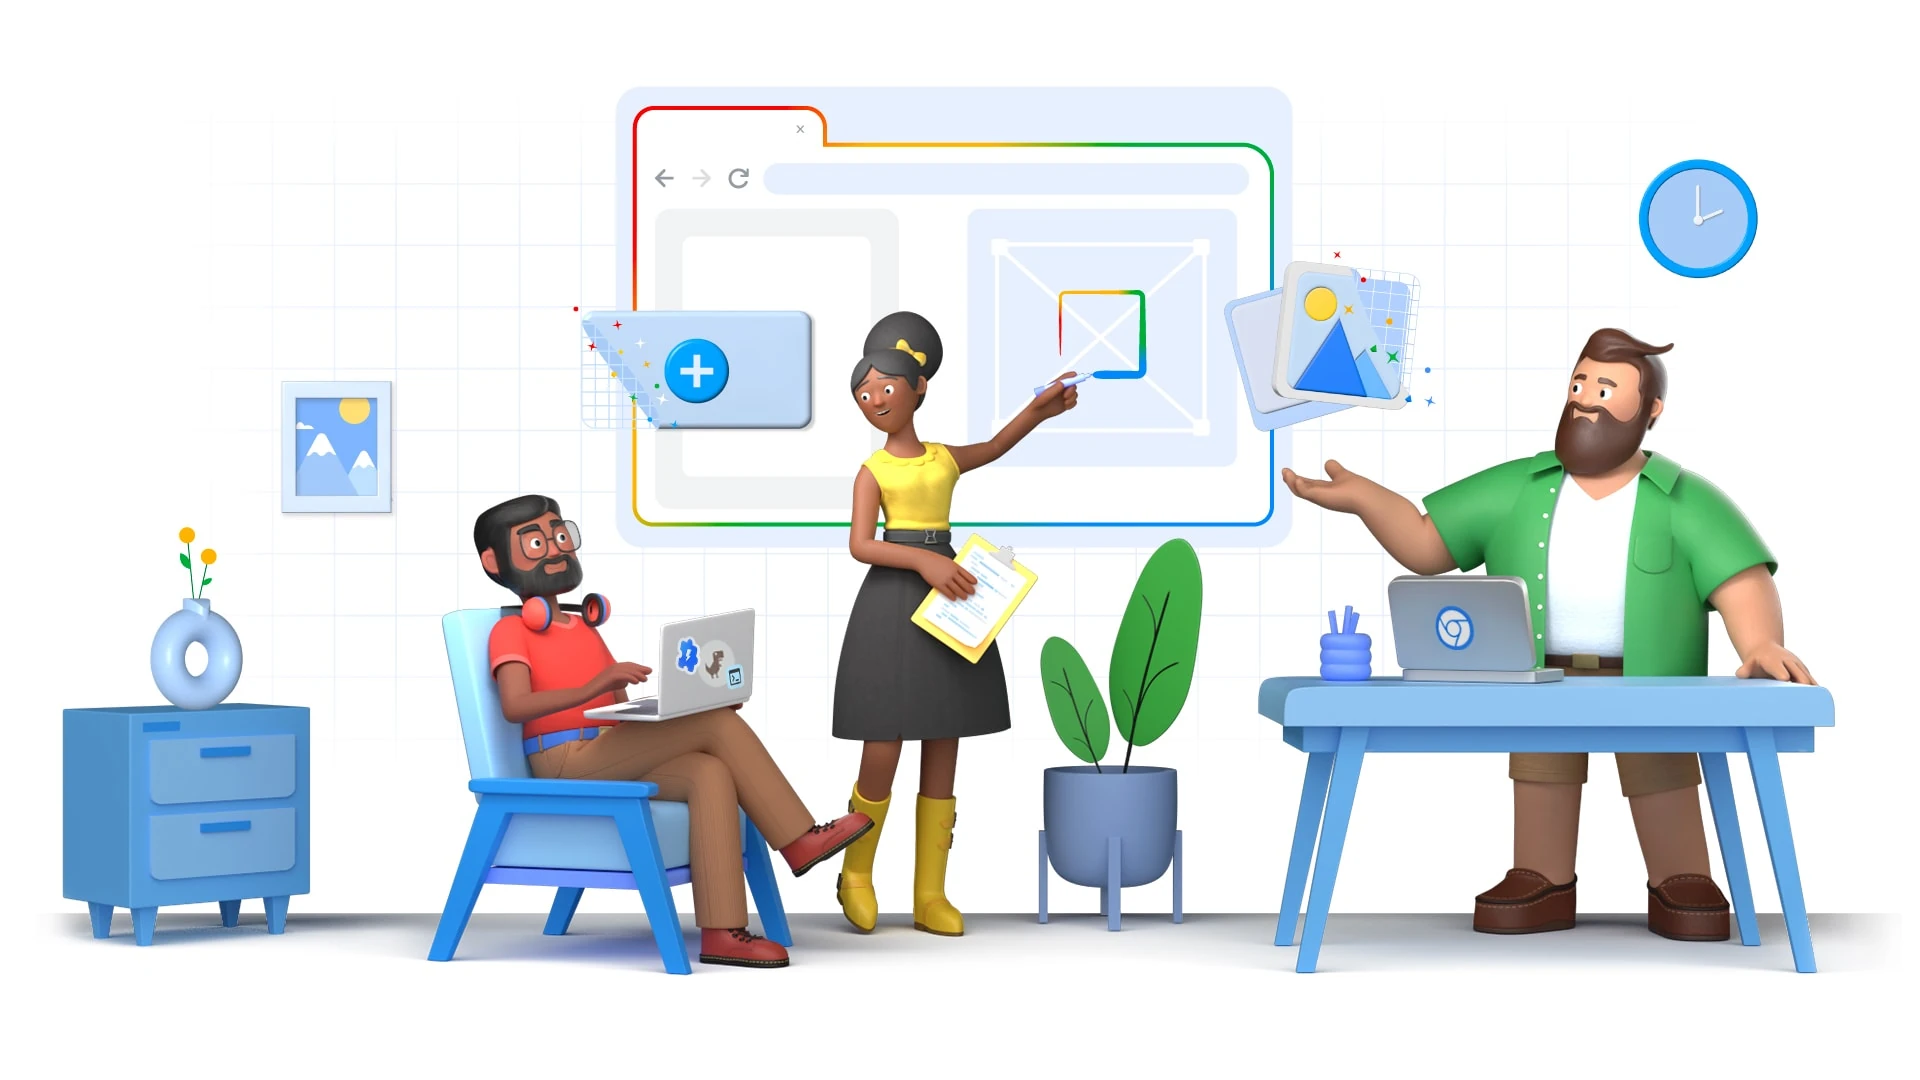 Una renderización al estilo de una caricatura de un conjunto diverso de personas que construyen un sitio web en una pizarra